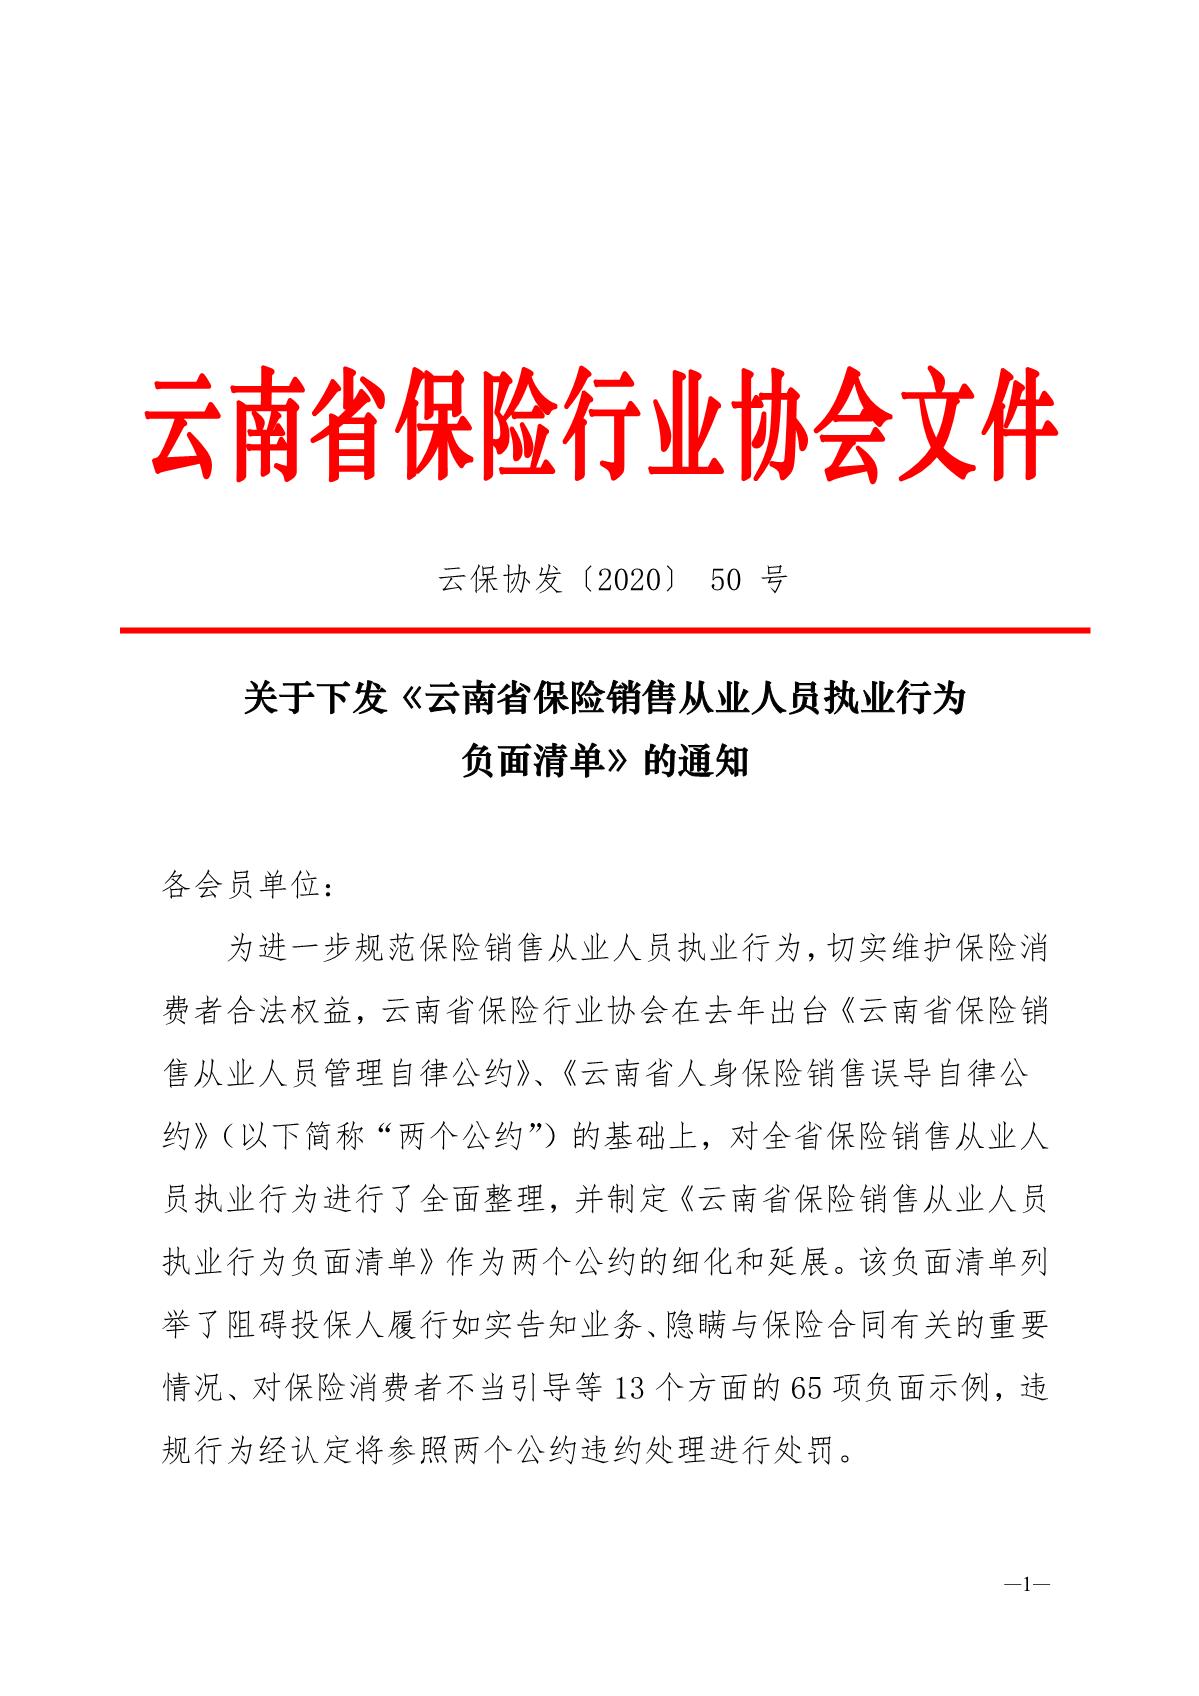 云南省保险行业协会 下发保险销售从业人员执业行为负面清单